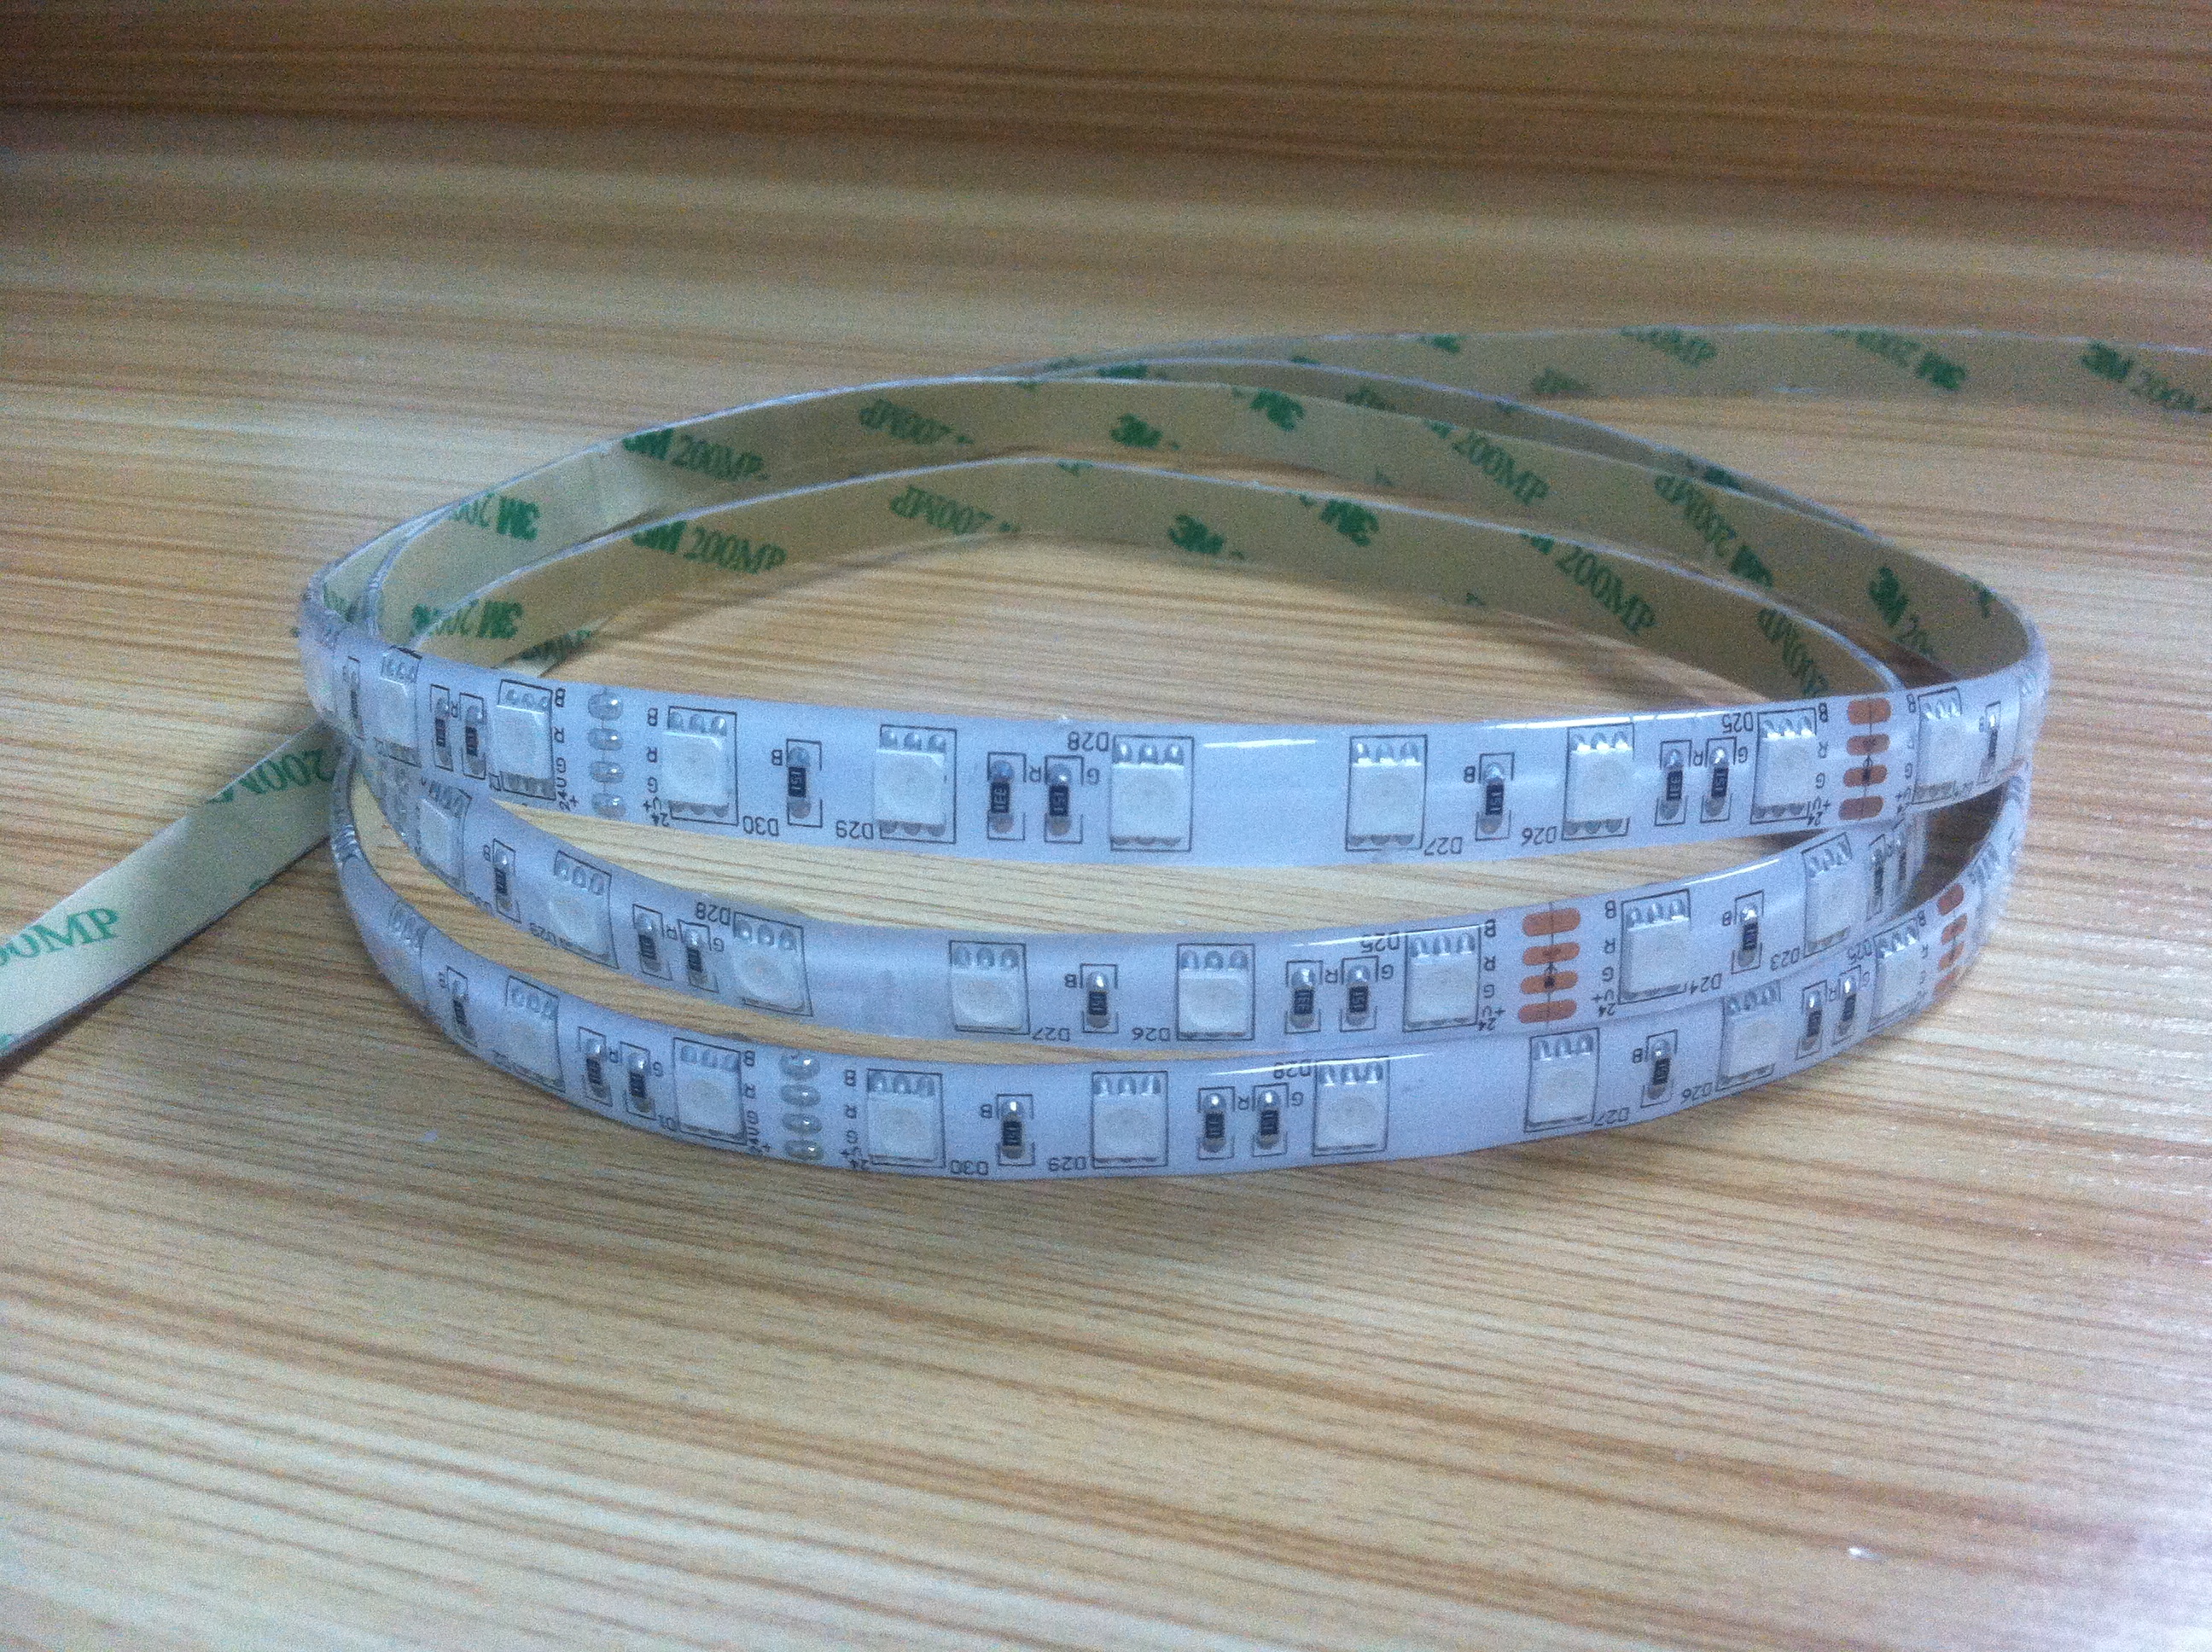 24v led strip - Flexible LED Strip